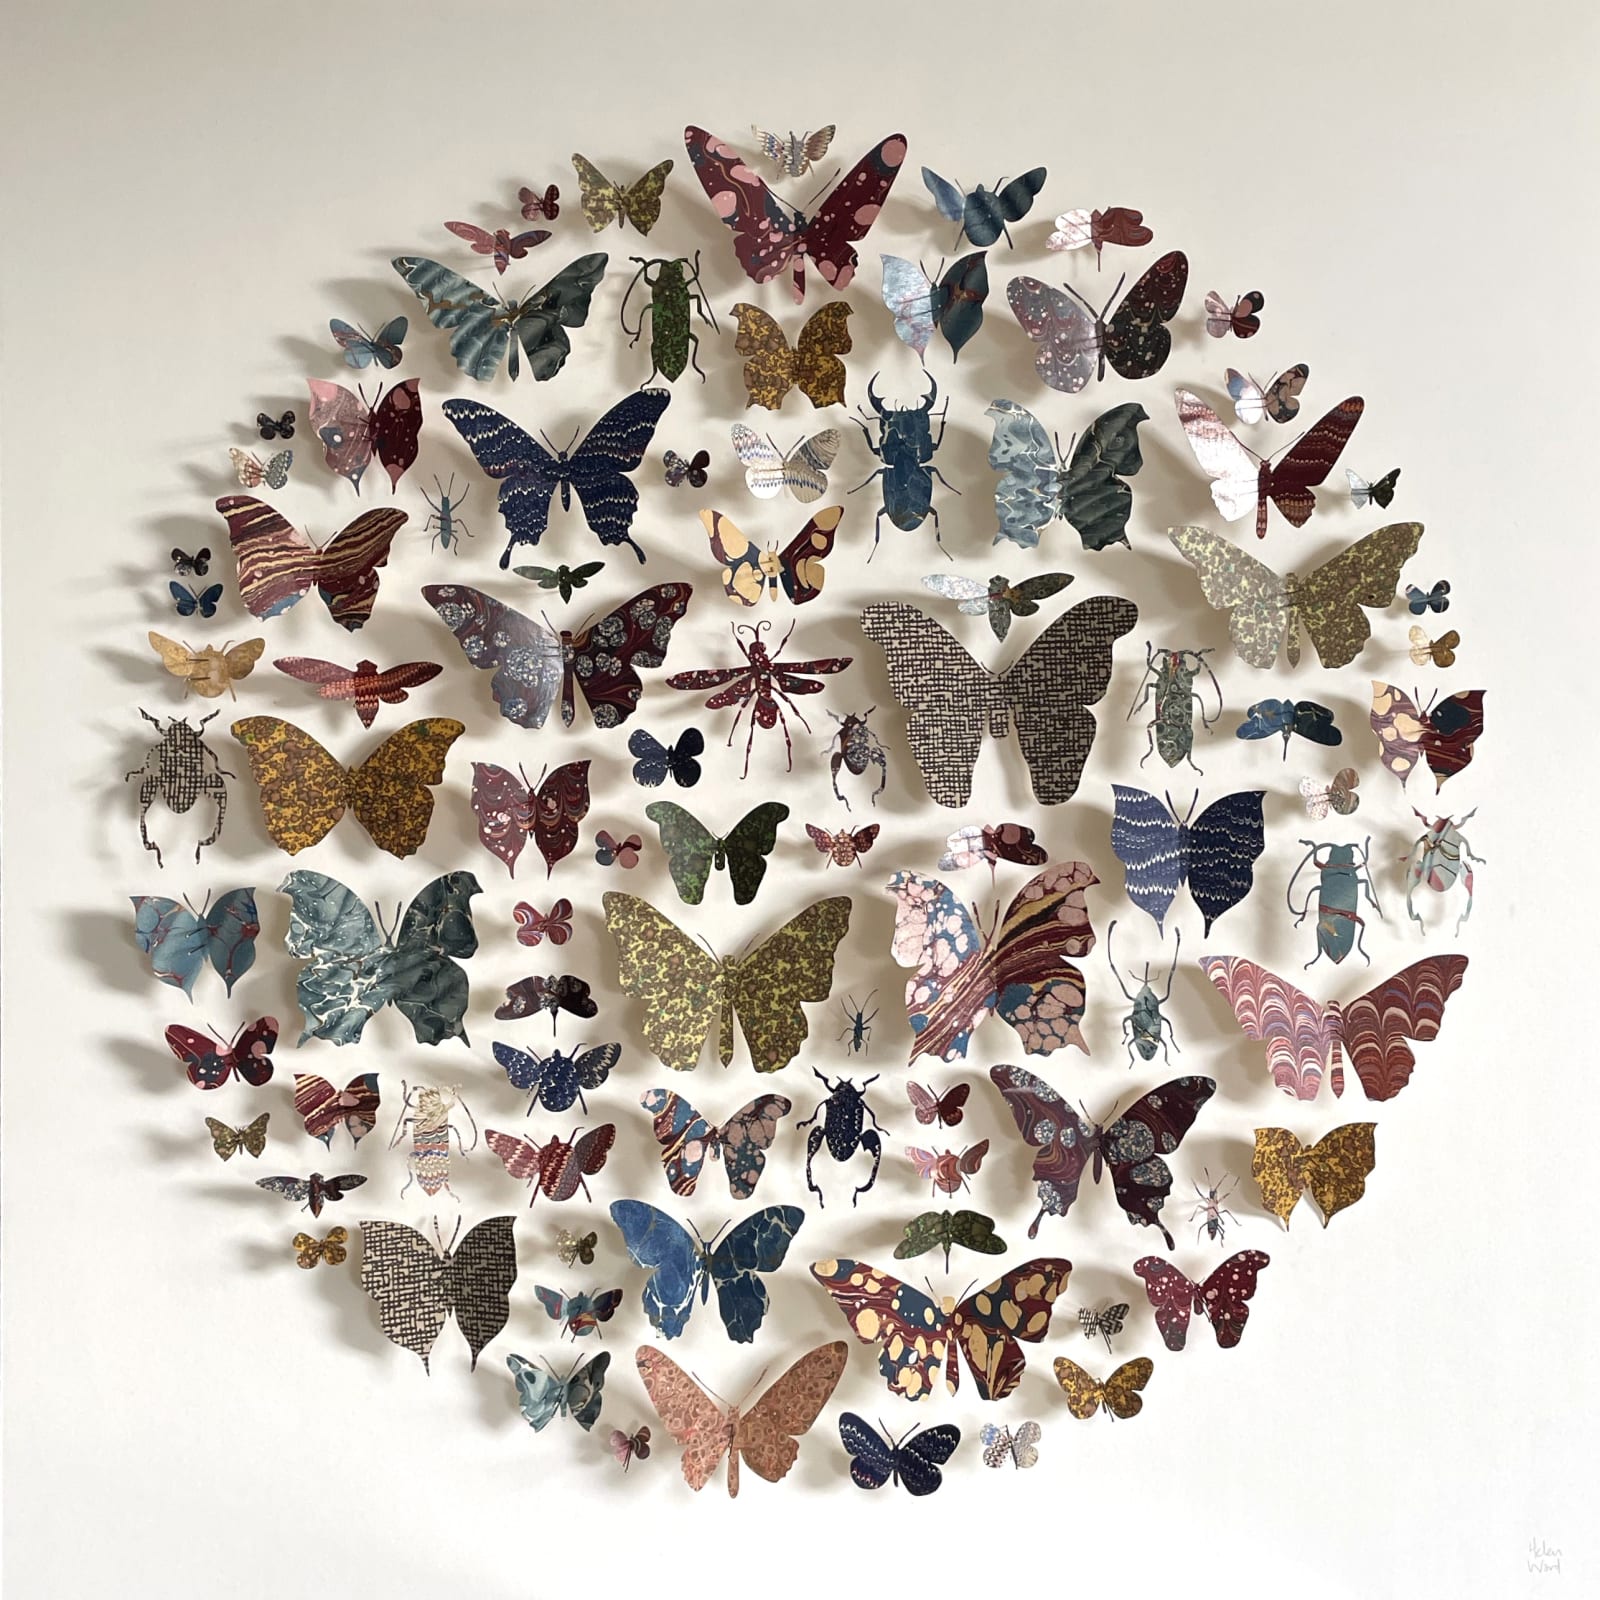 Helen Ward, entomology circle